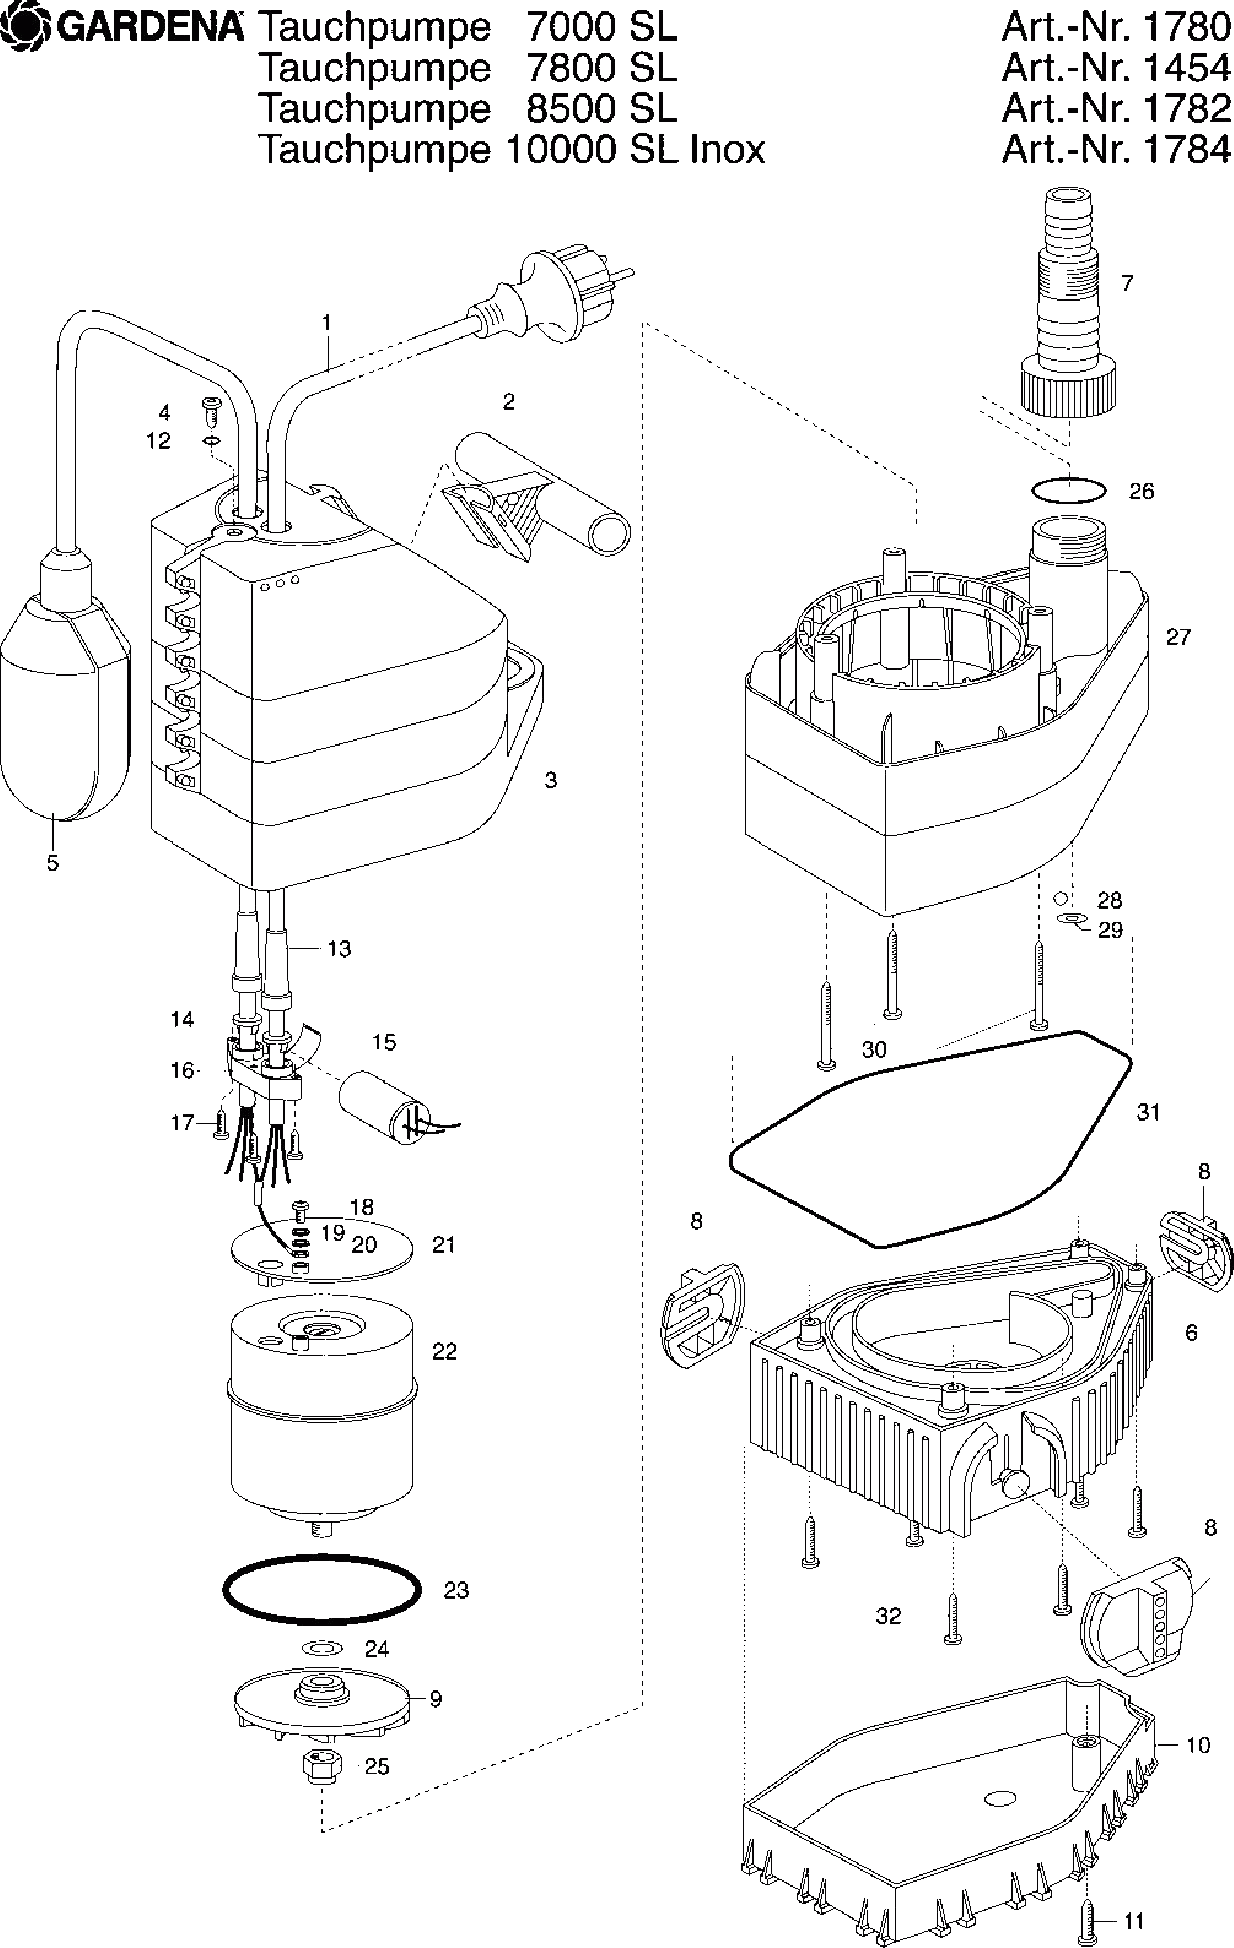 Запчасти, схема и деталировка GARDENA 10000 SL INOX (ДО 2007 ГОДА) (АРТ. 1784-20)